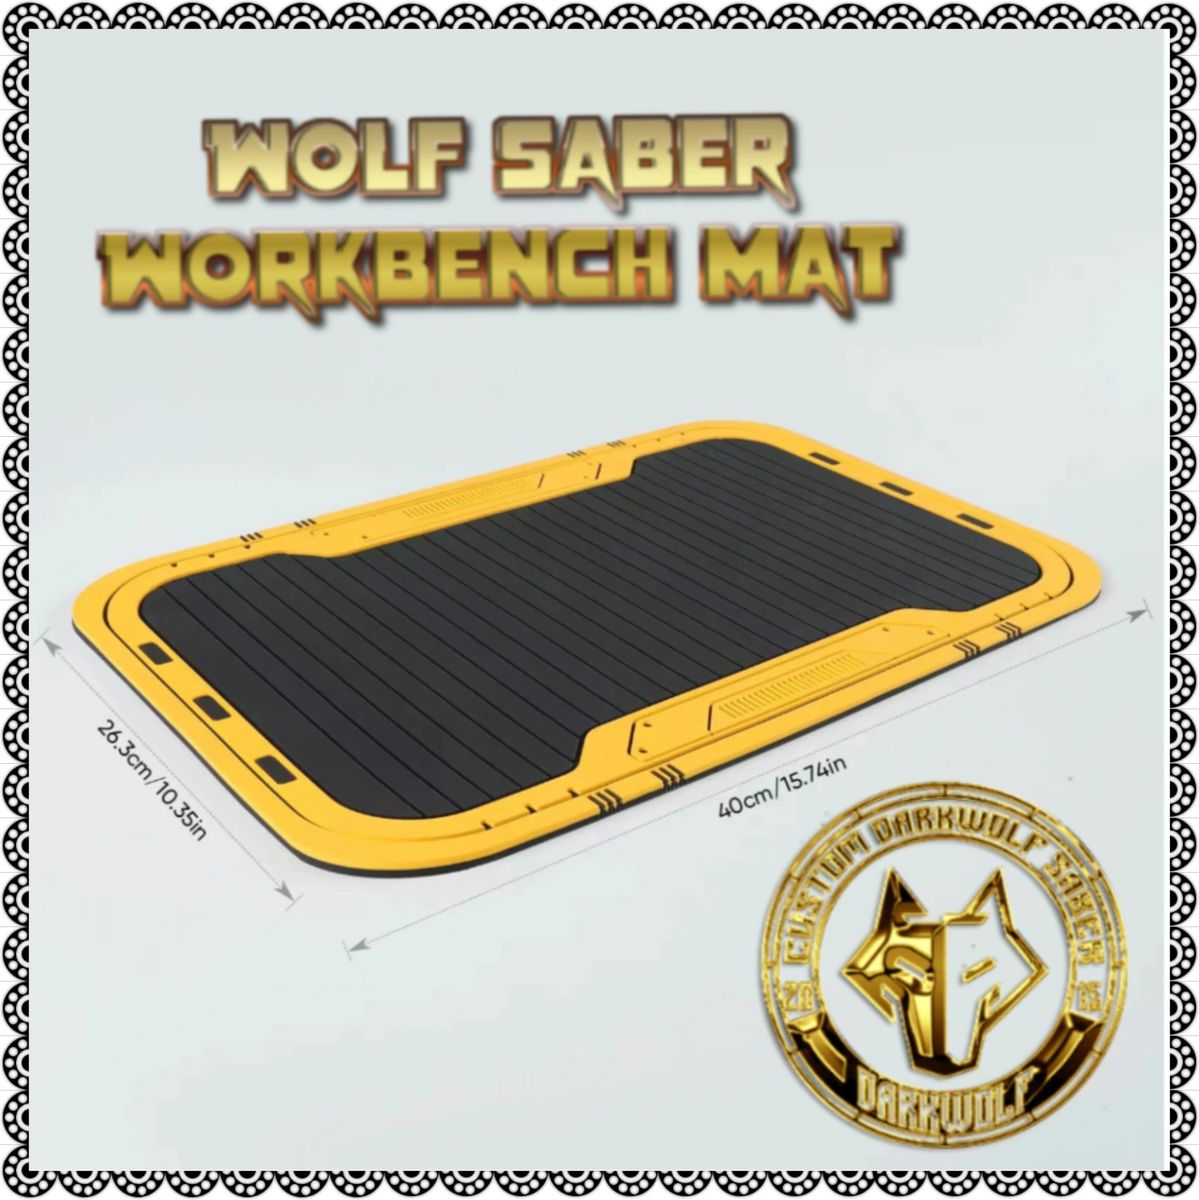 Wolf Saber Workbench Mat (USA)